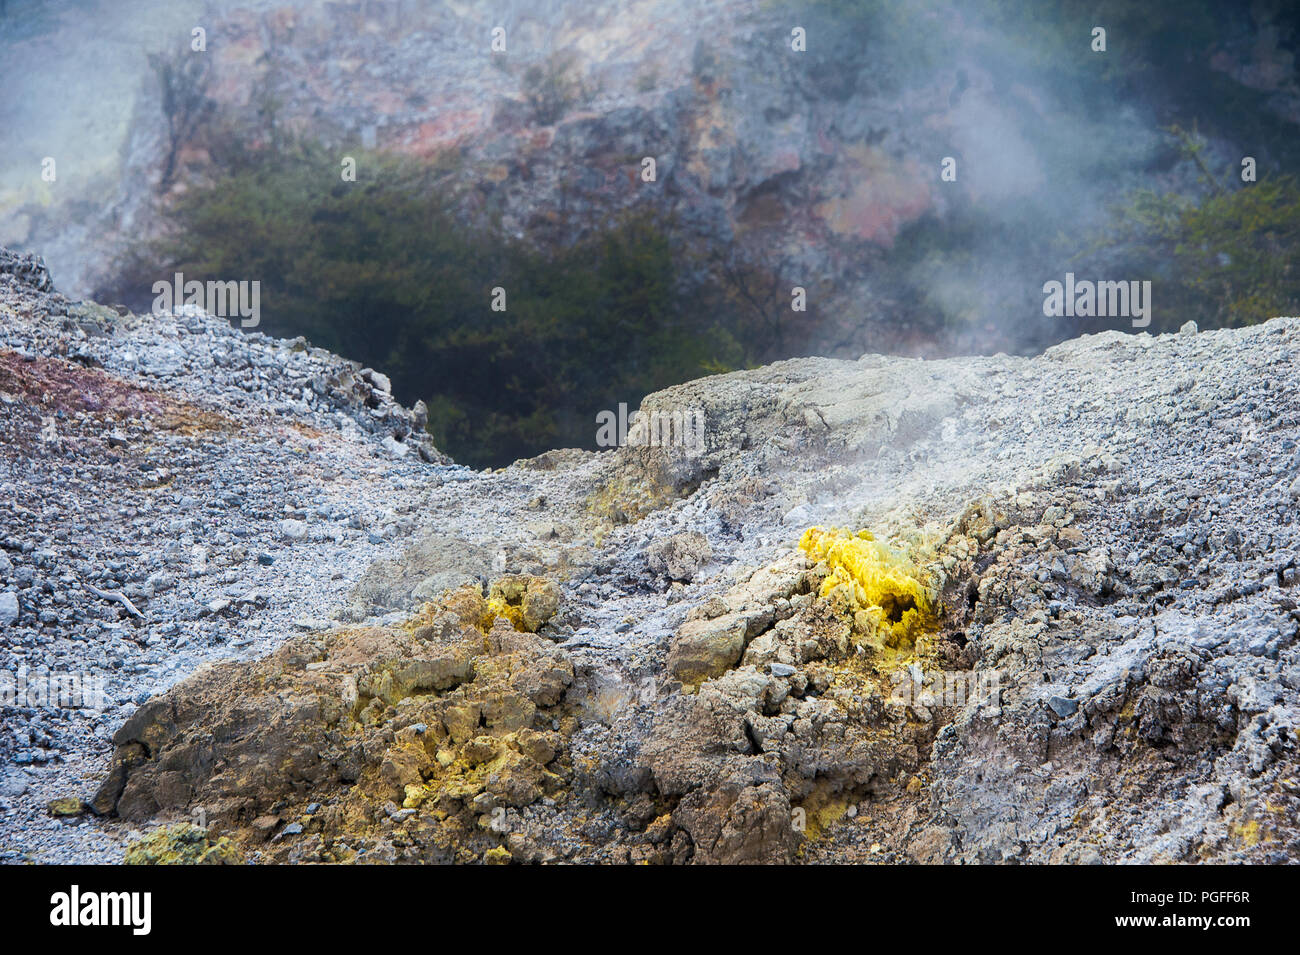 Devil's Home cratère, Waiotapu geothermal park près de Rotorua, Nouvelle-Zélande. Fermer jusqu'au bord du cratère coloré montrant les roches volcaniques tachée de minéraux Banque D'Images